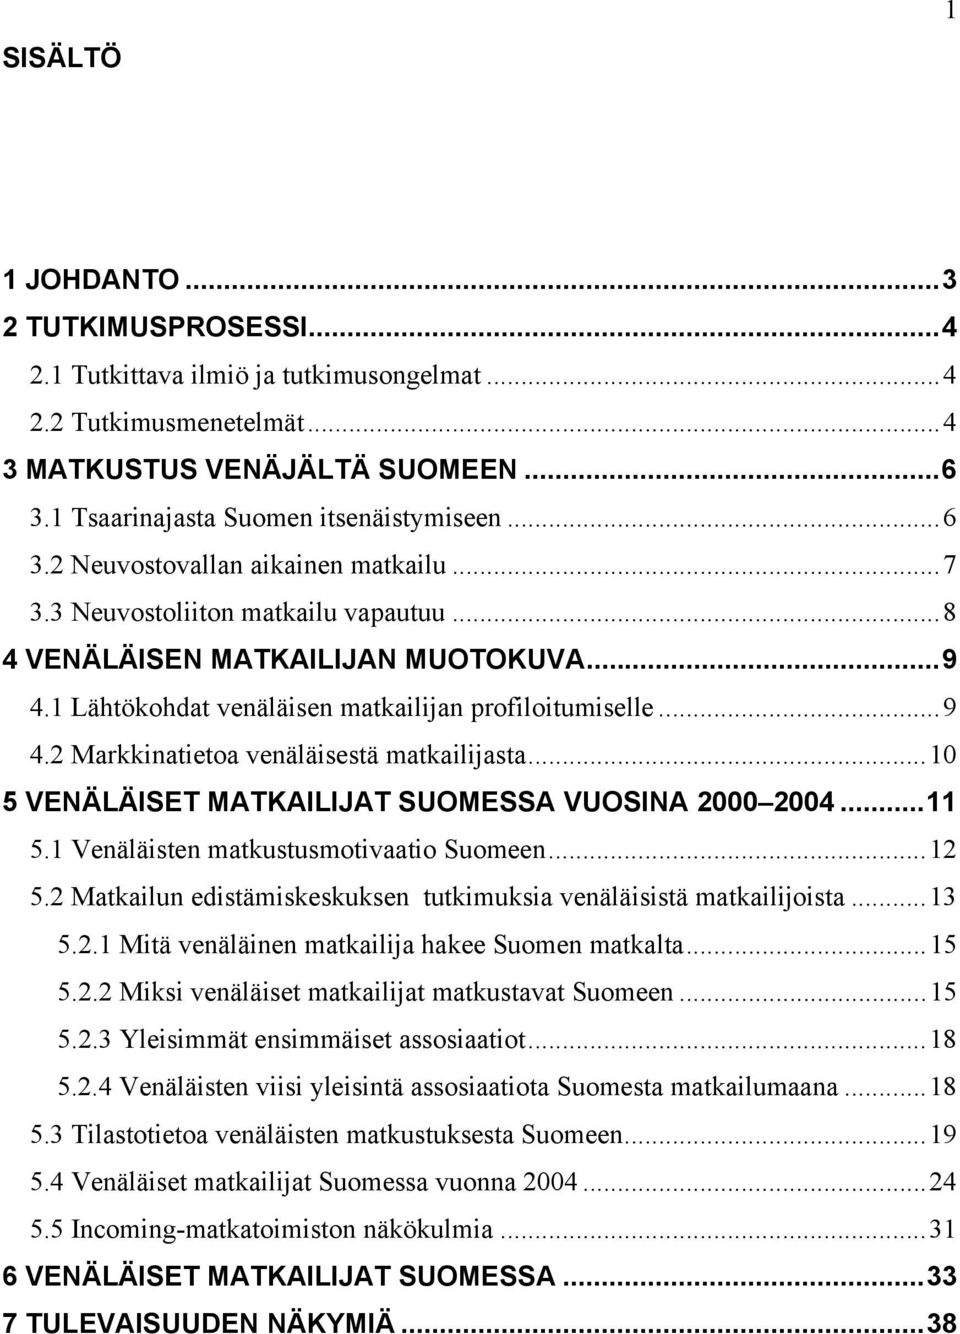 ..10 5 VENÄLÄISET MATKAILIJAT SUOMESSA VUOSINA 2000 2004...11 5.1 Venäläisten matkustusmotivaatio Suomeen...12 5.2 Matkailun edistämiskeskuksen tutkimuksia venäläisistä matkailijoista...13 5.2.1 Mitä venäläinen matkailija hakee Suomen matkalta.